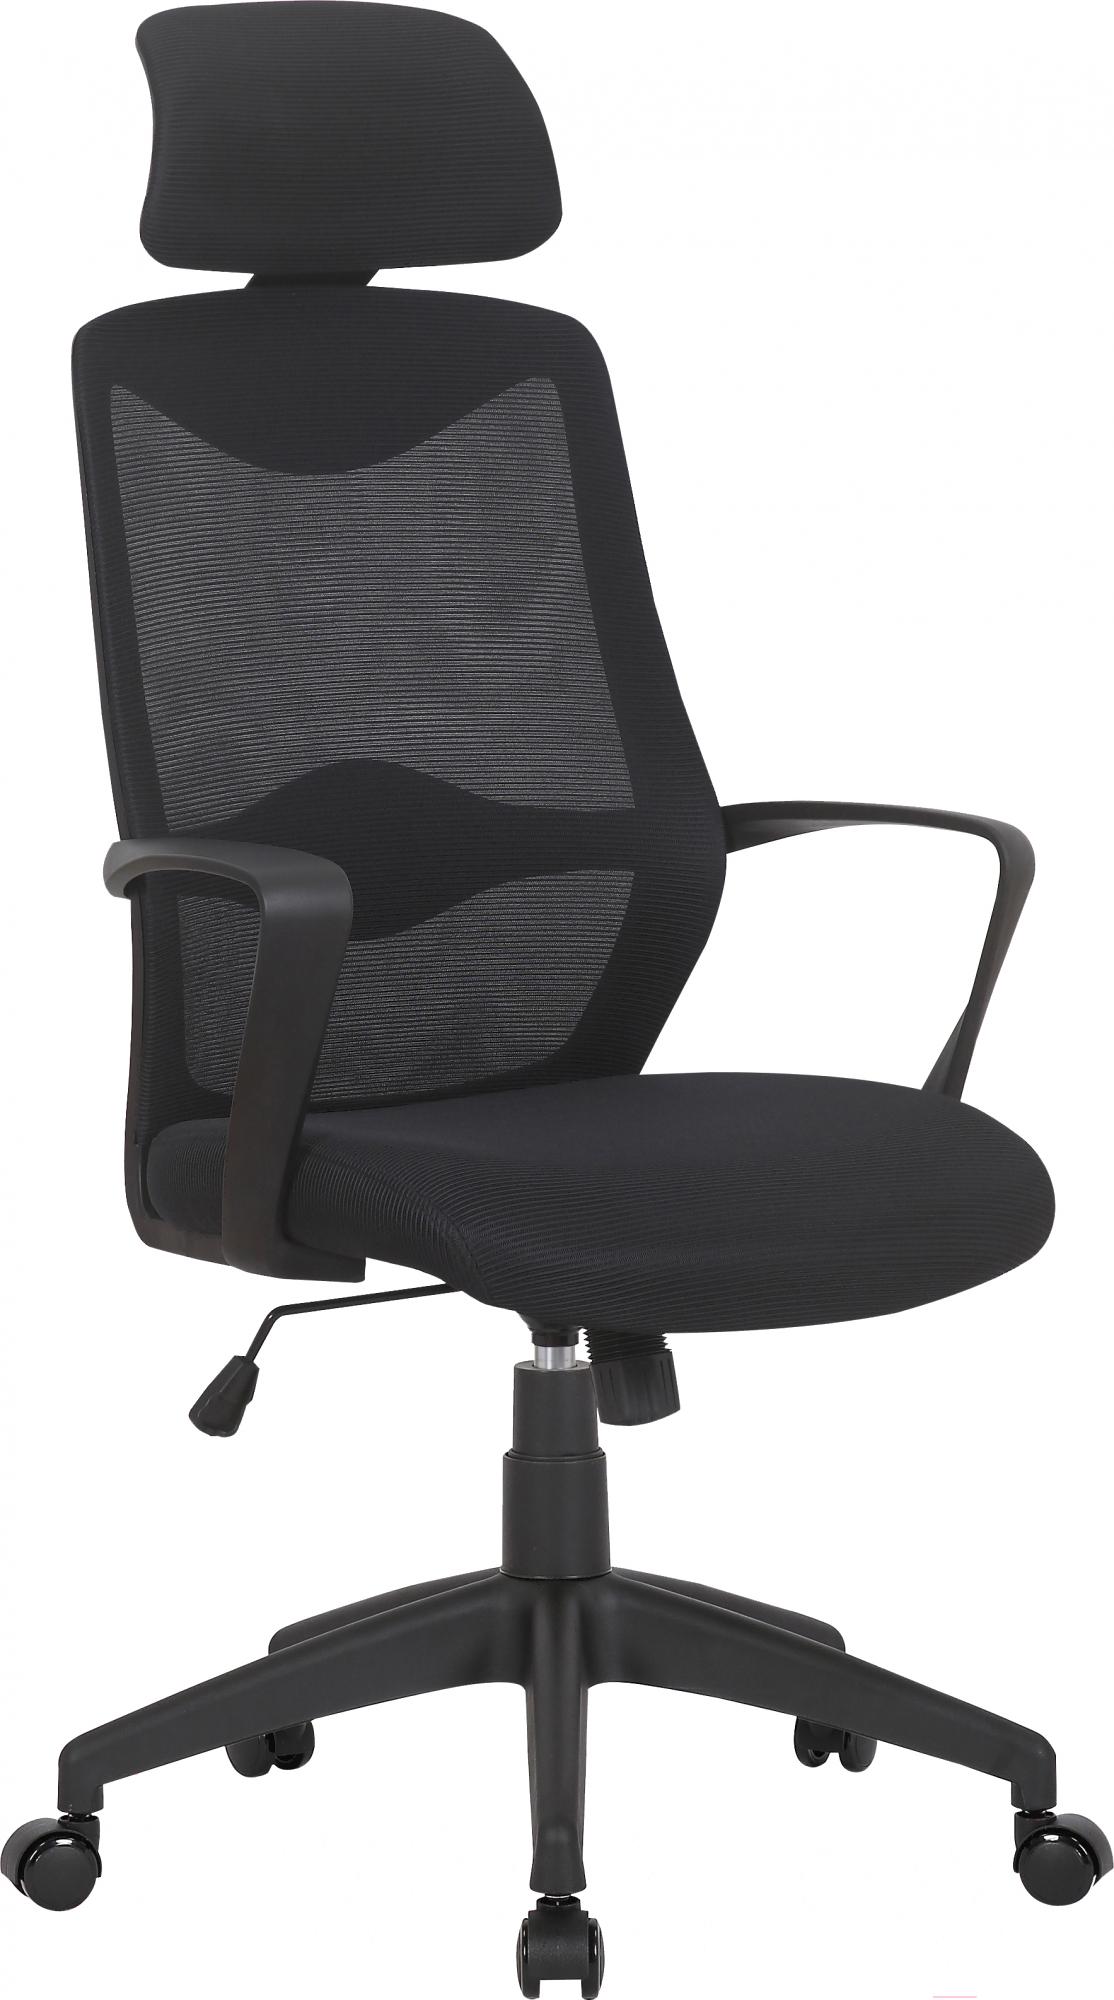 Кресло офисное Mio Tesoro Брунелло AF-C4719 (черный)  - купить